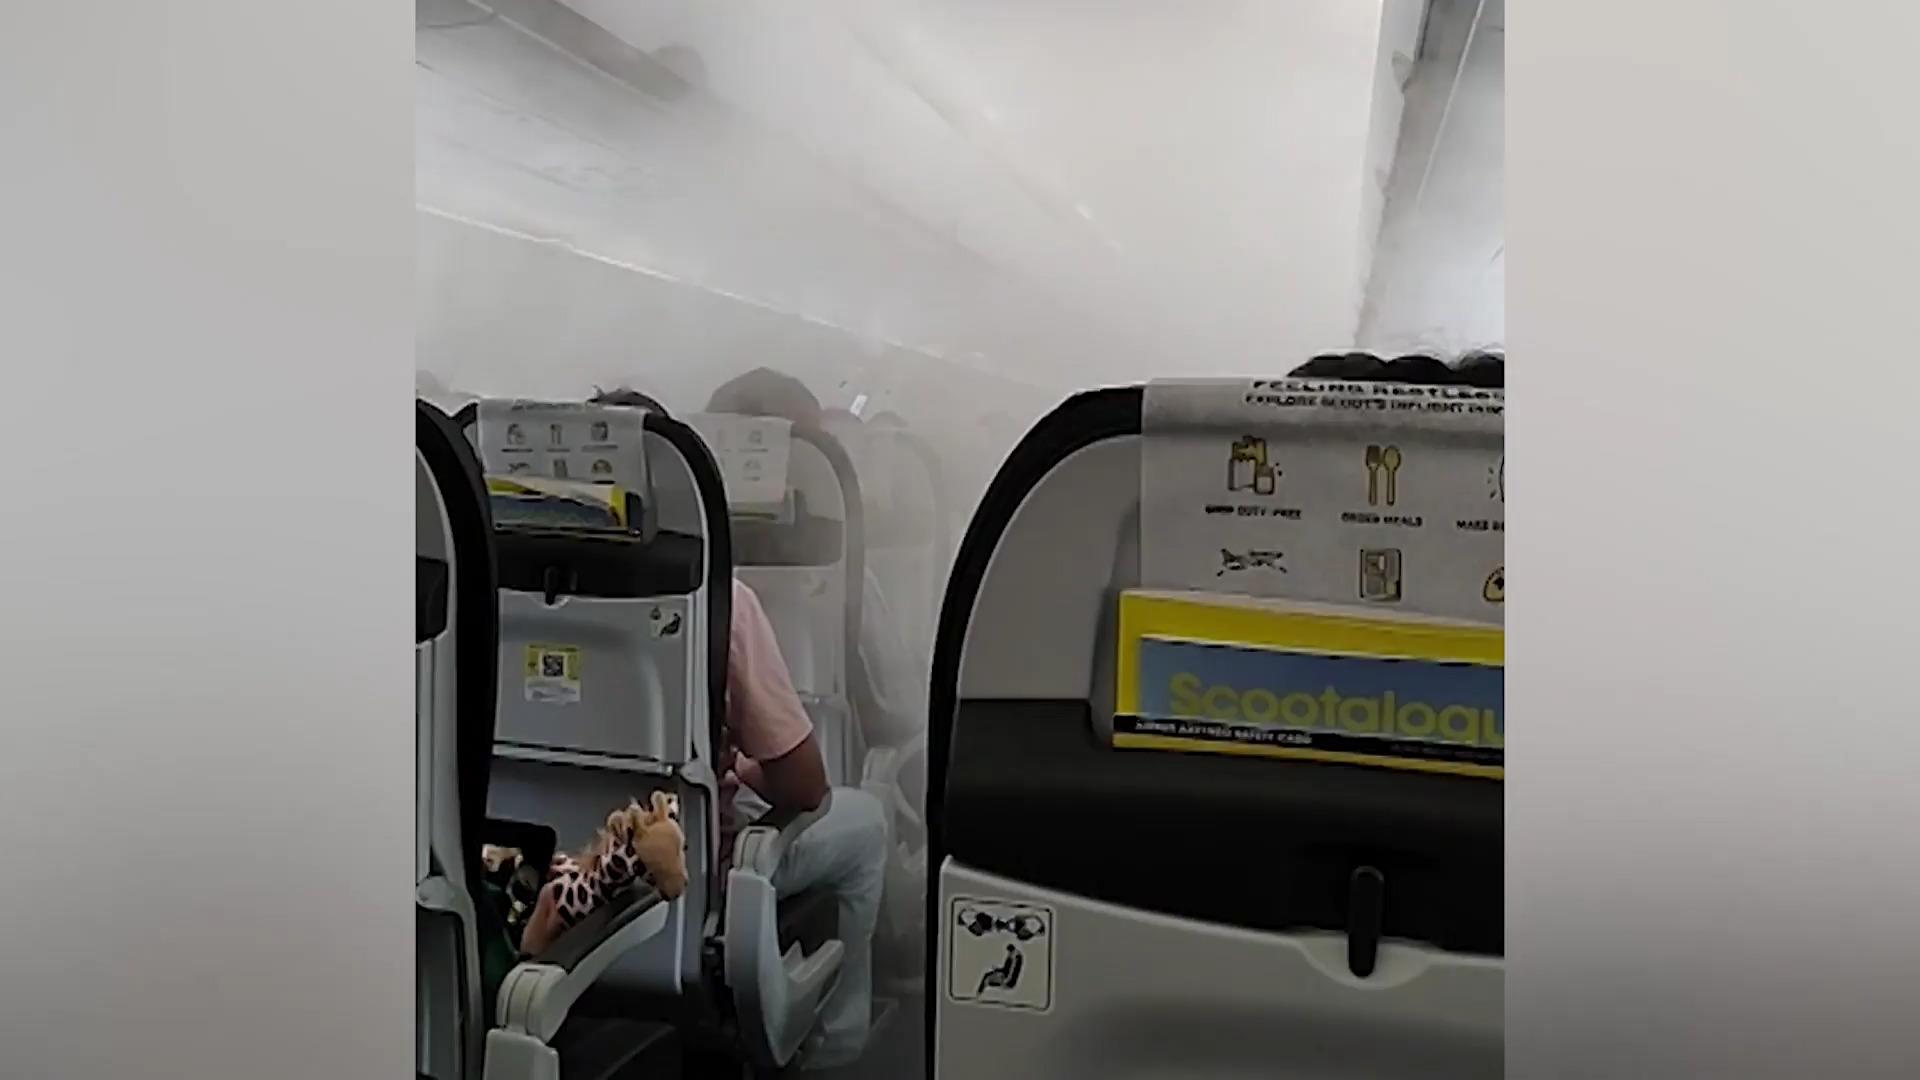 ¡Niebla blanca envolvió la cabina del avión!  Los pasajeros se sorprendieron